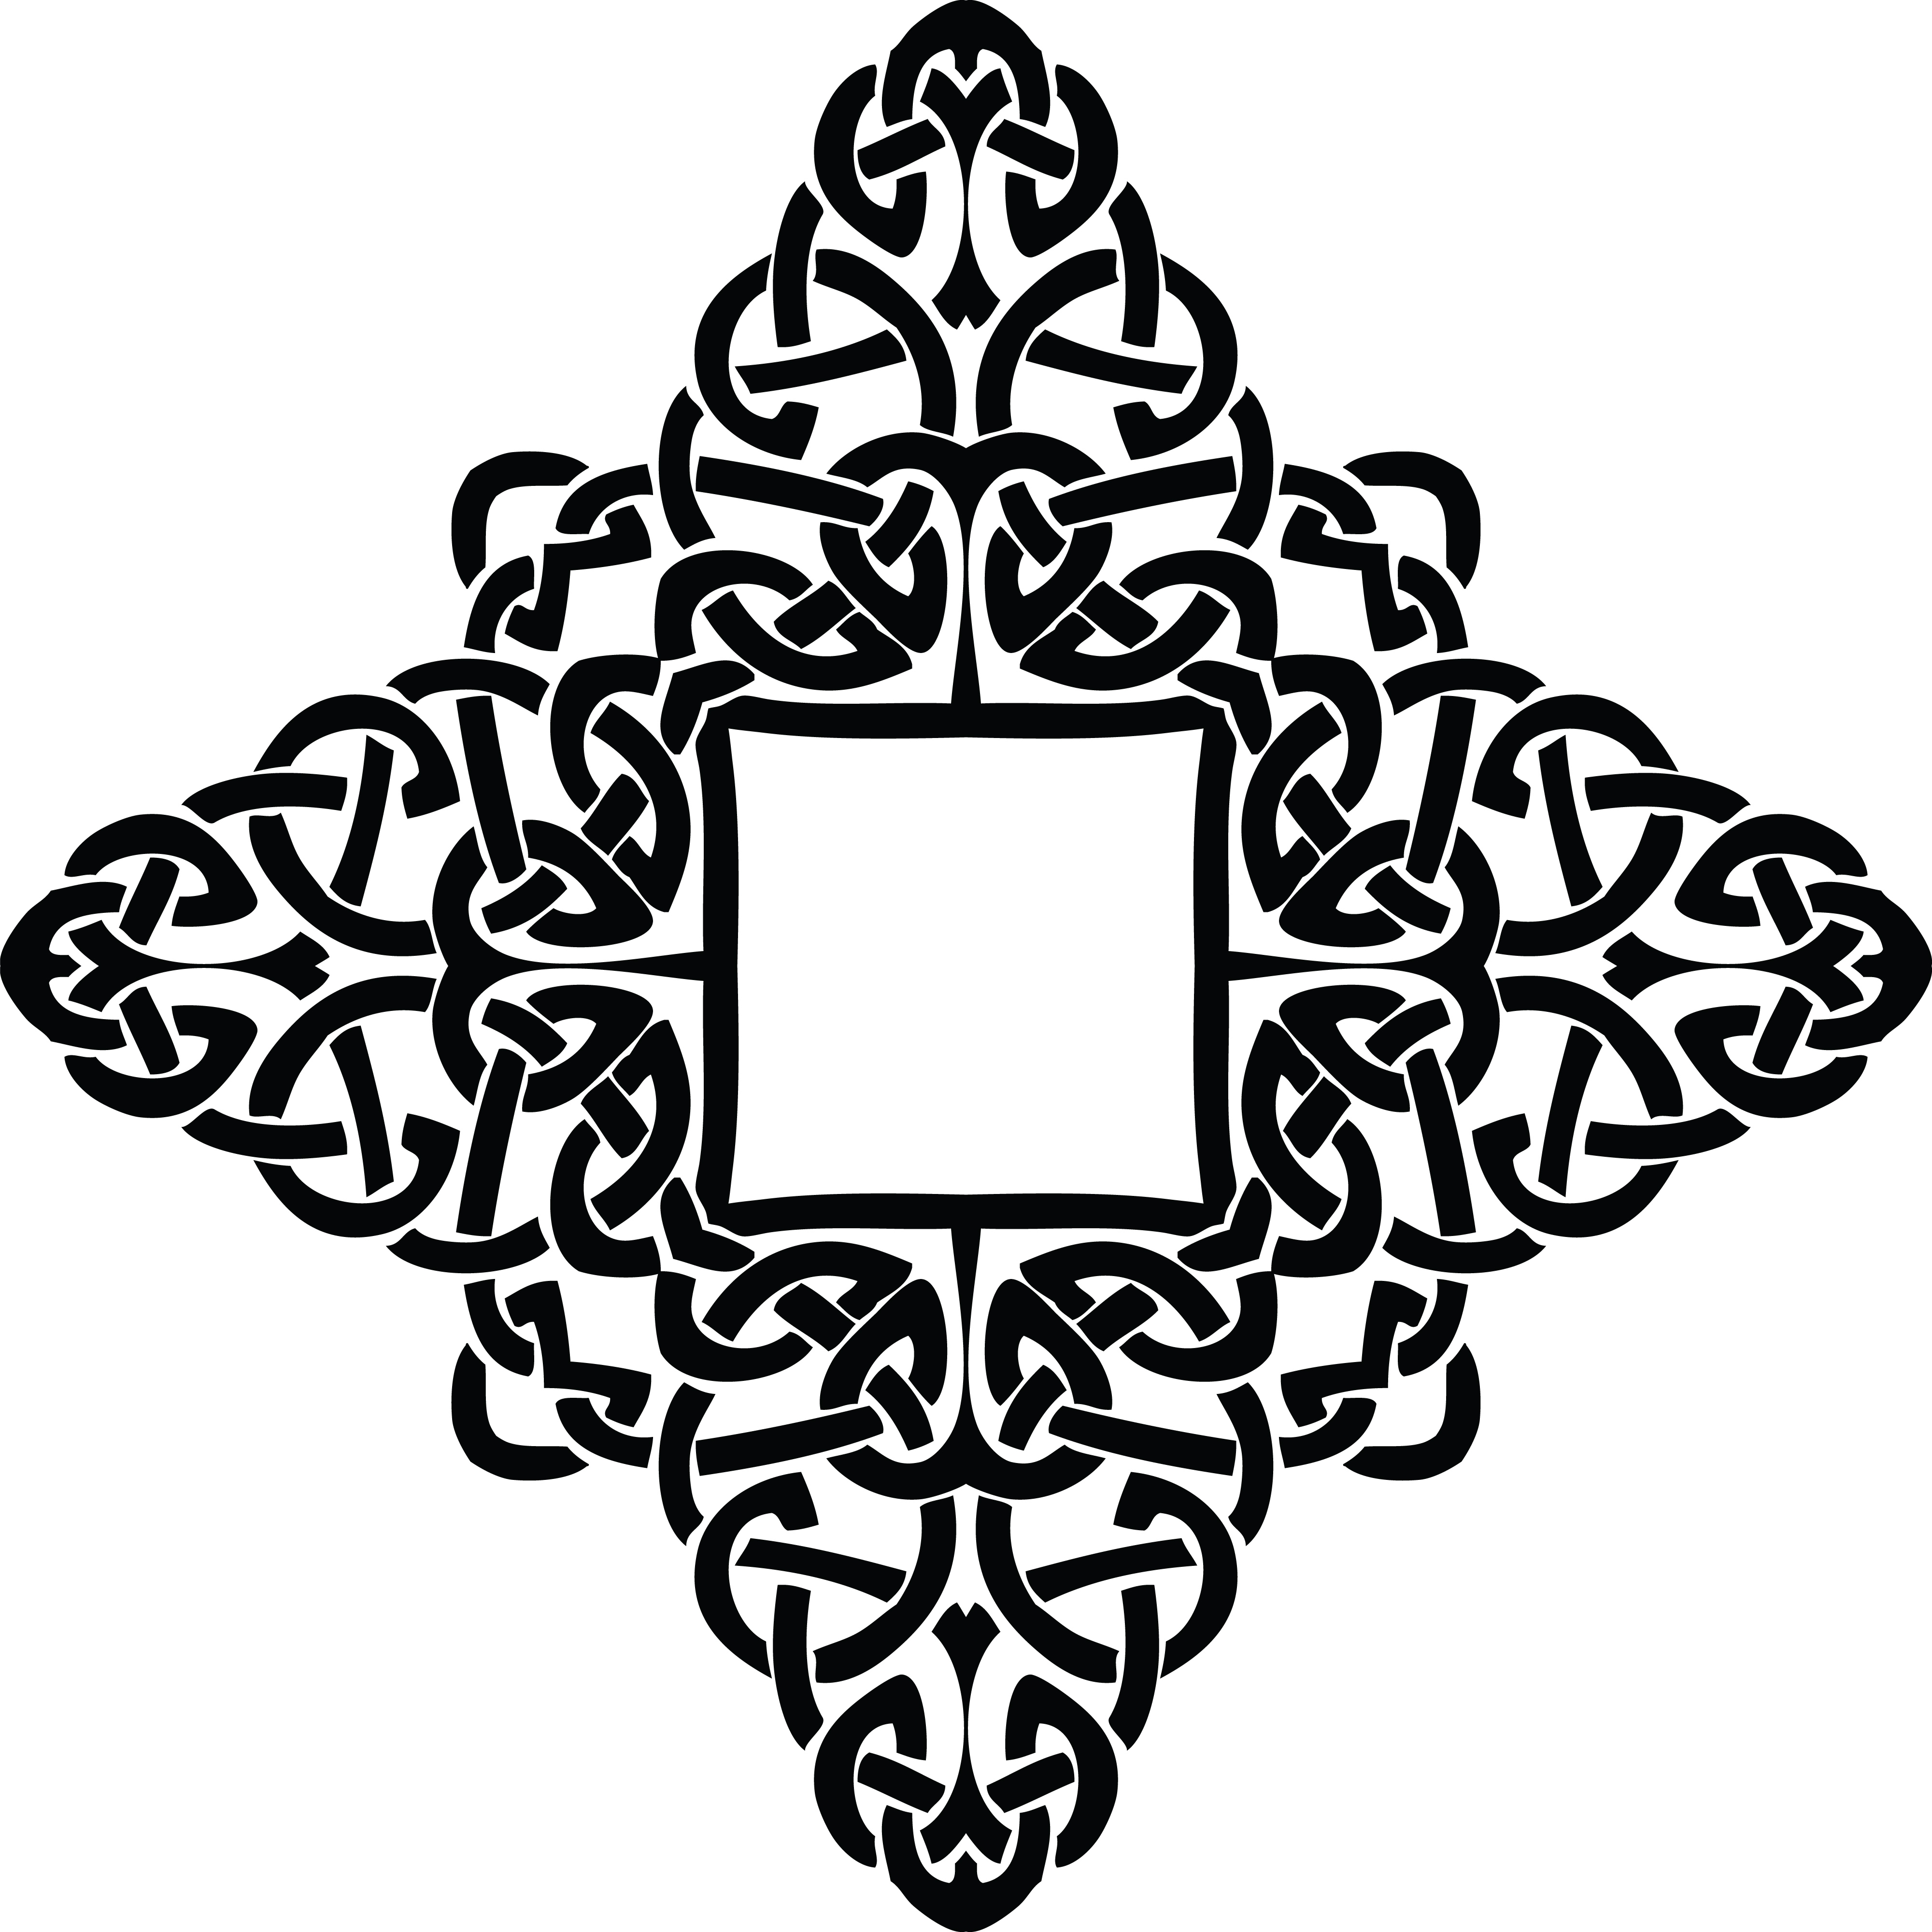 illuminated manuscript borders black and white celtic knot